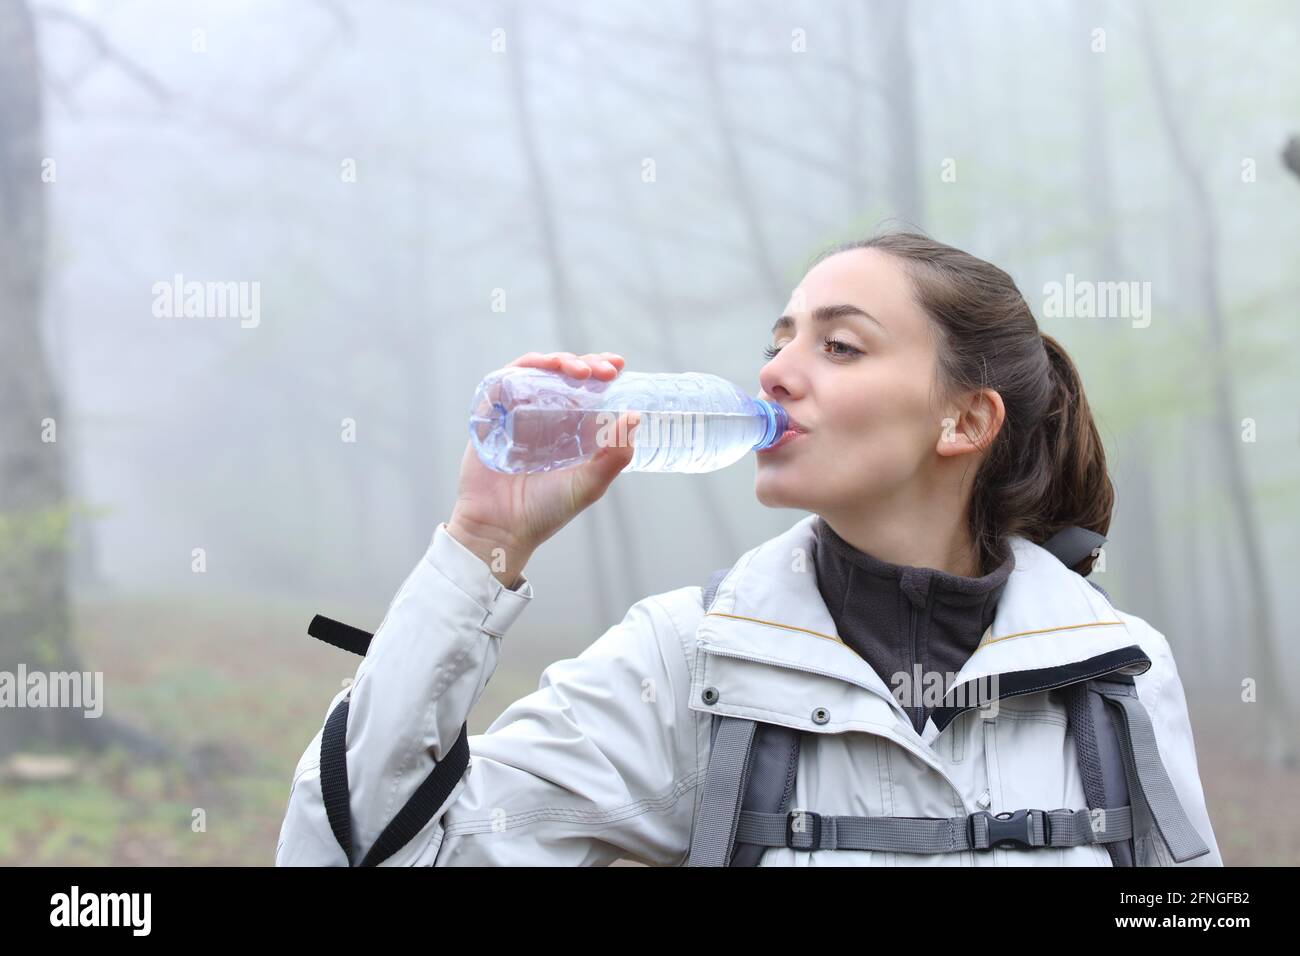 Glücklicher Wanderer, der Wasser aus einer Plastikflasche trinkt, die in einem steht Nebelwald Stockfoto